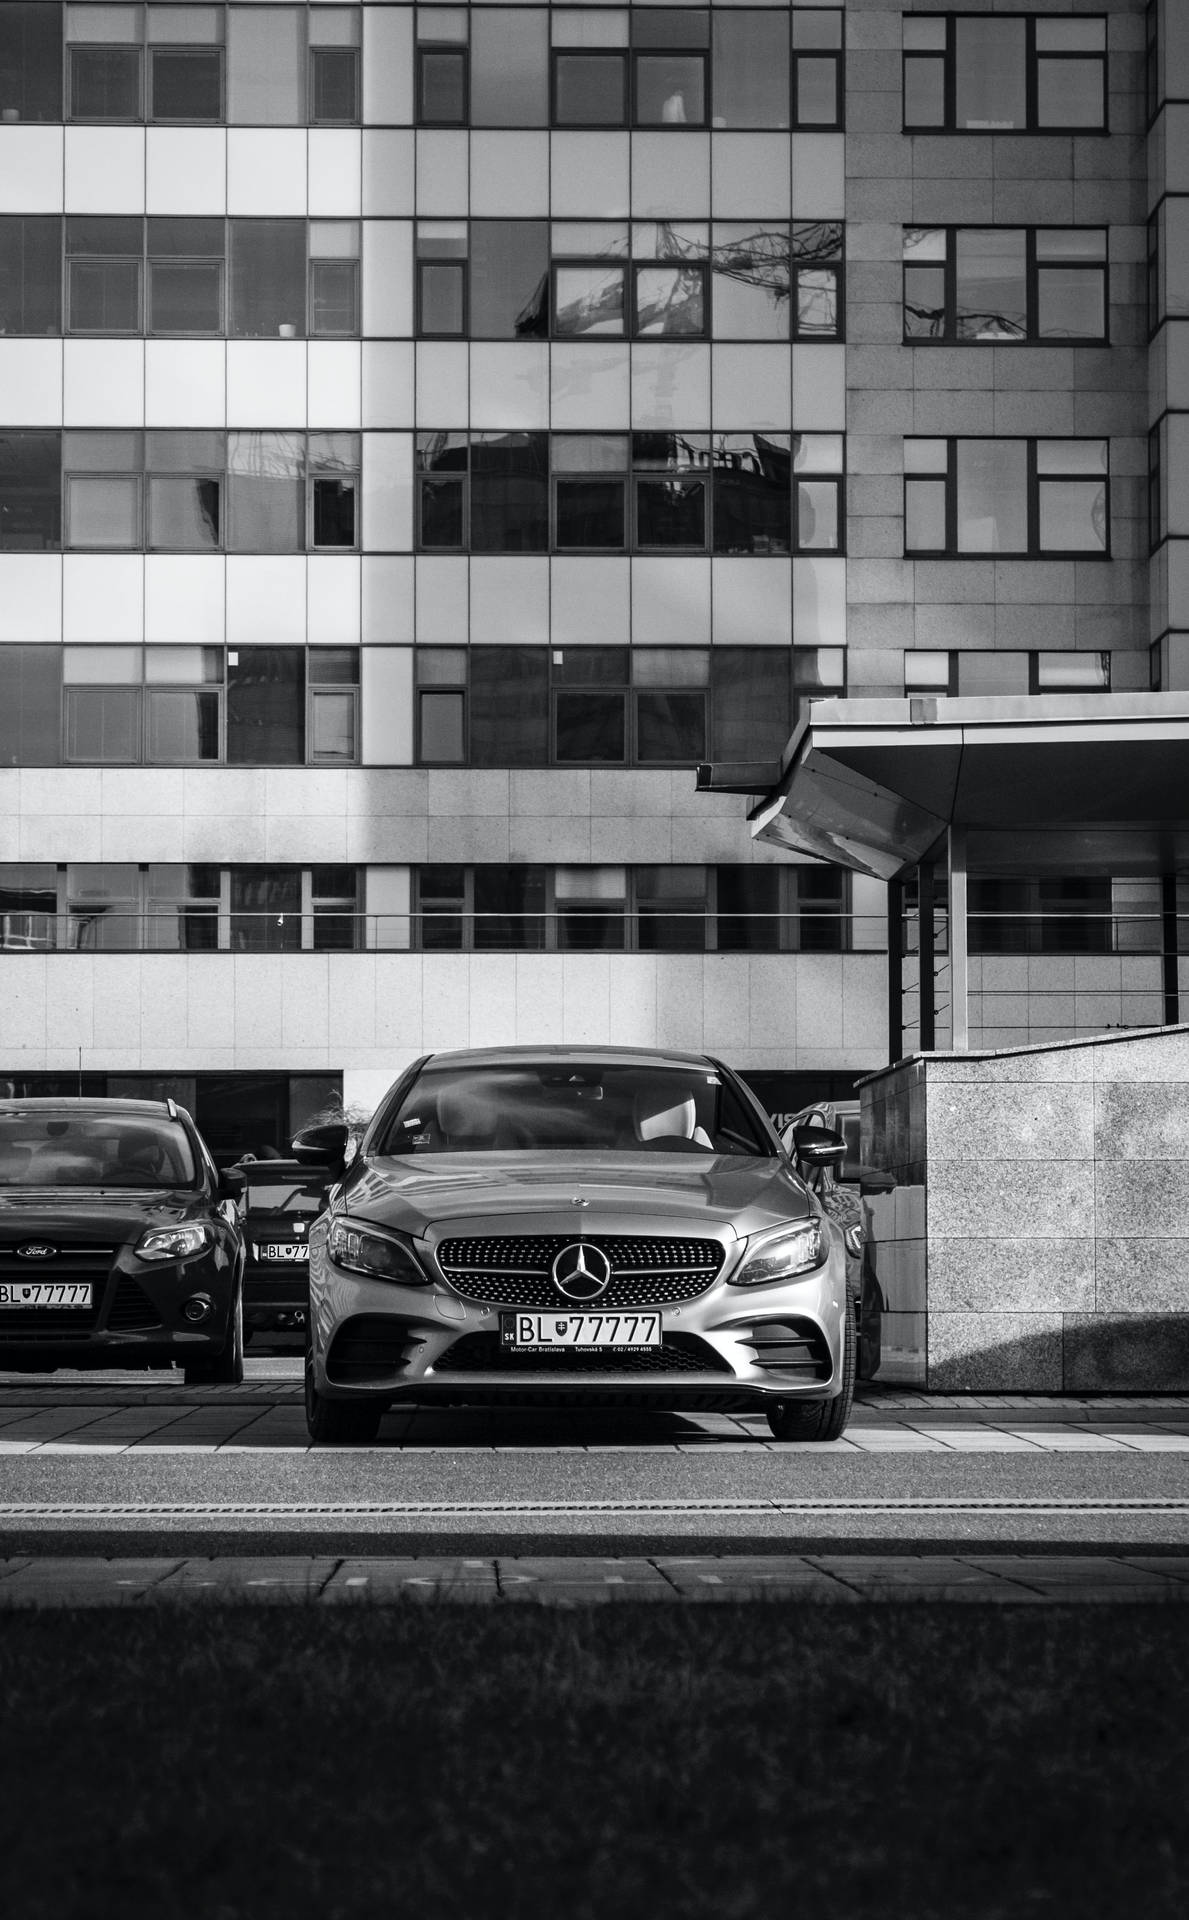 Parked Mercedes Benz E Class Wallpaper